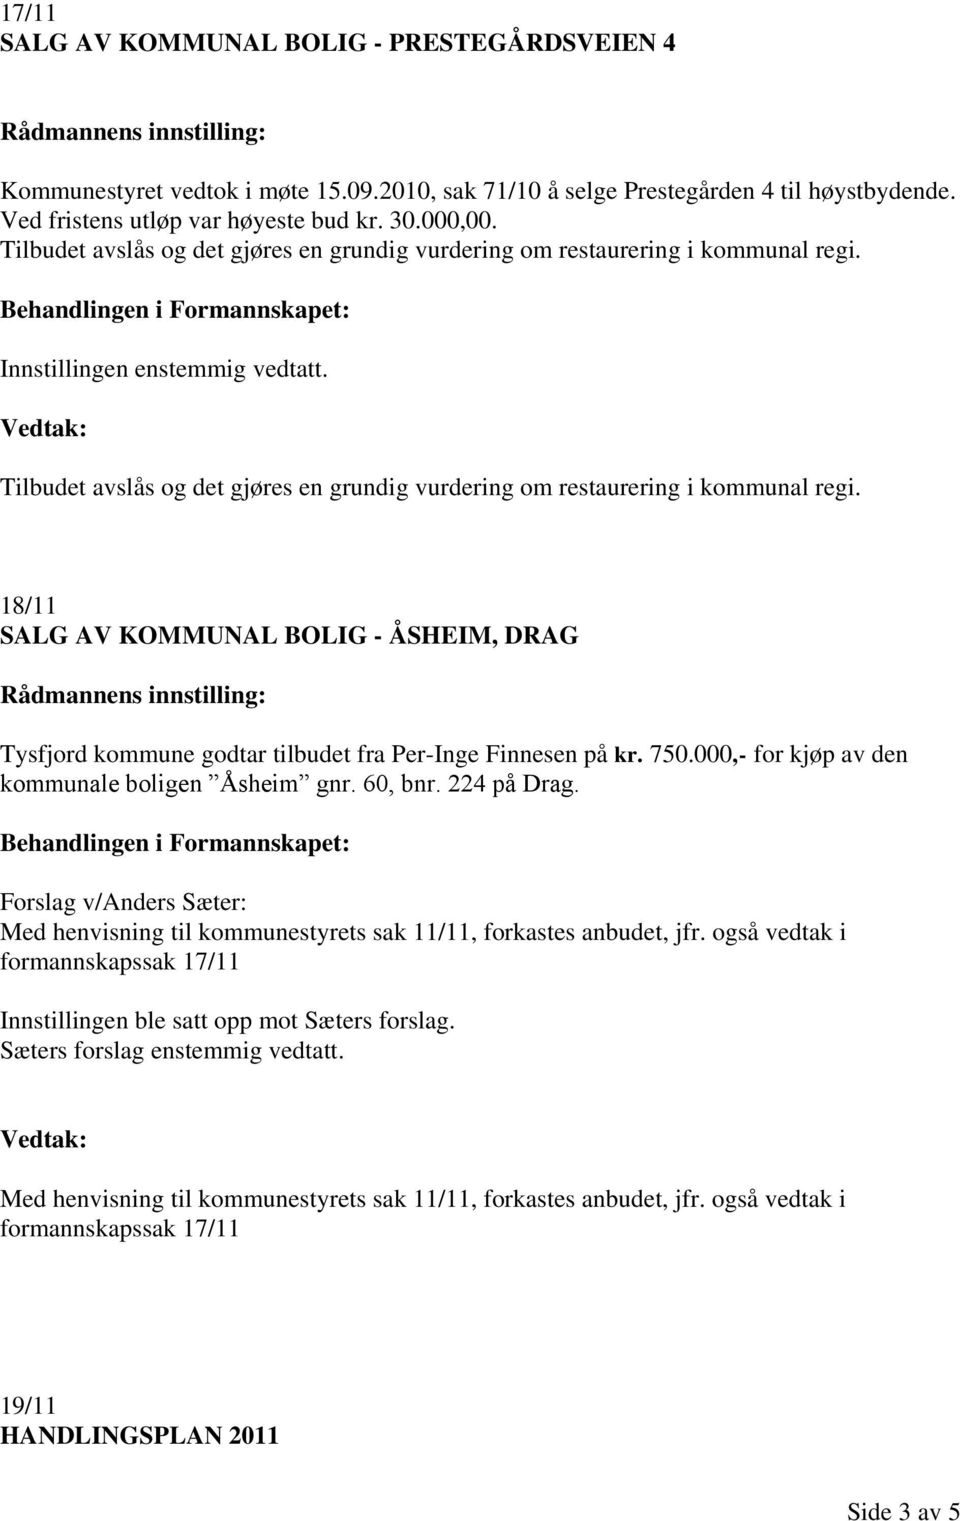 18/11 SALG AV KOMMUNAL BOLIG - ÅSHEIM, DRAG Tysfjord kommune godtar tilbudet fra Per-Inge Finnesen på kr. 750.000,- for kjøp av den kommunale boligen Åsheim gnr. 60, bnr. 224 på Drag.